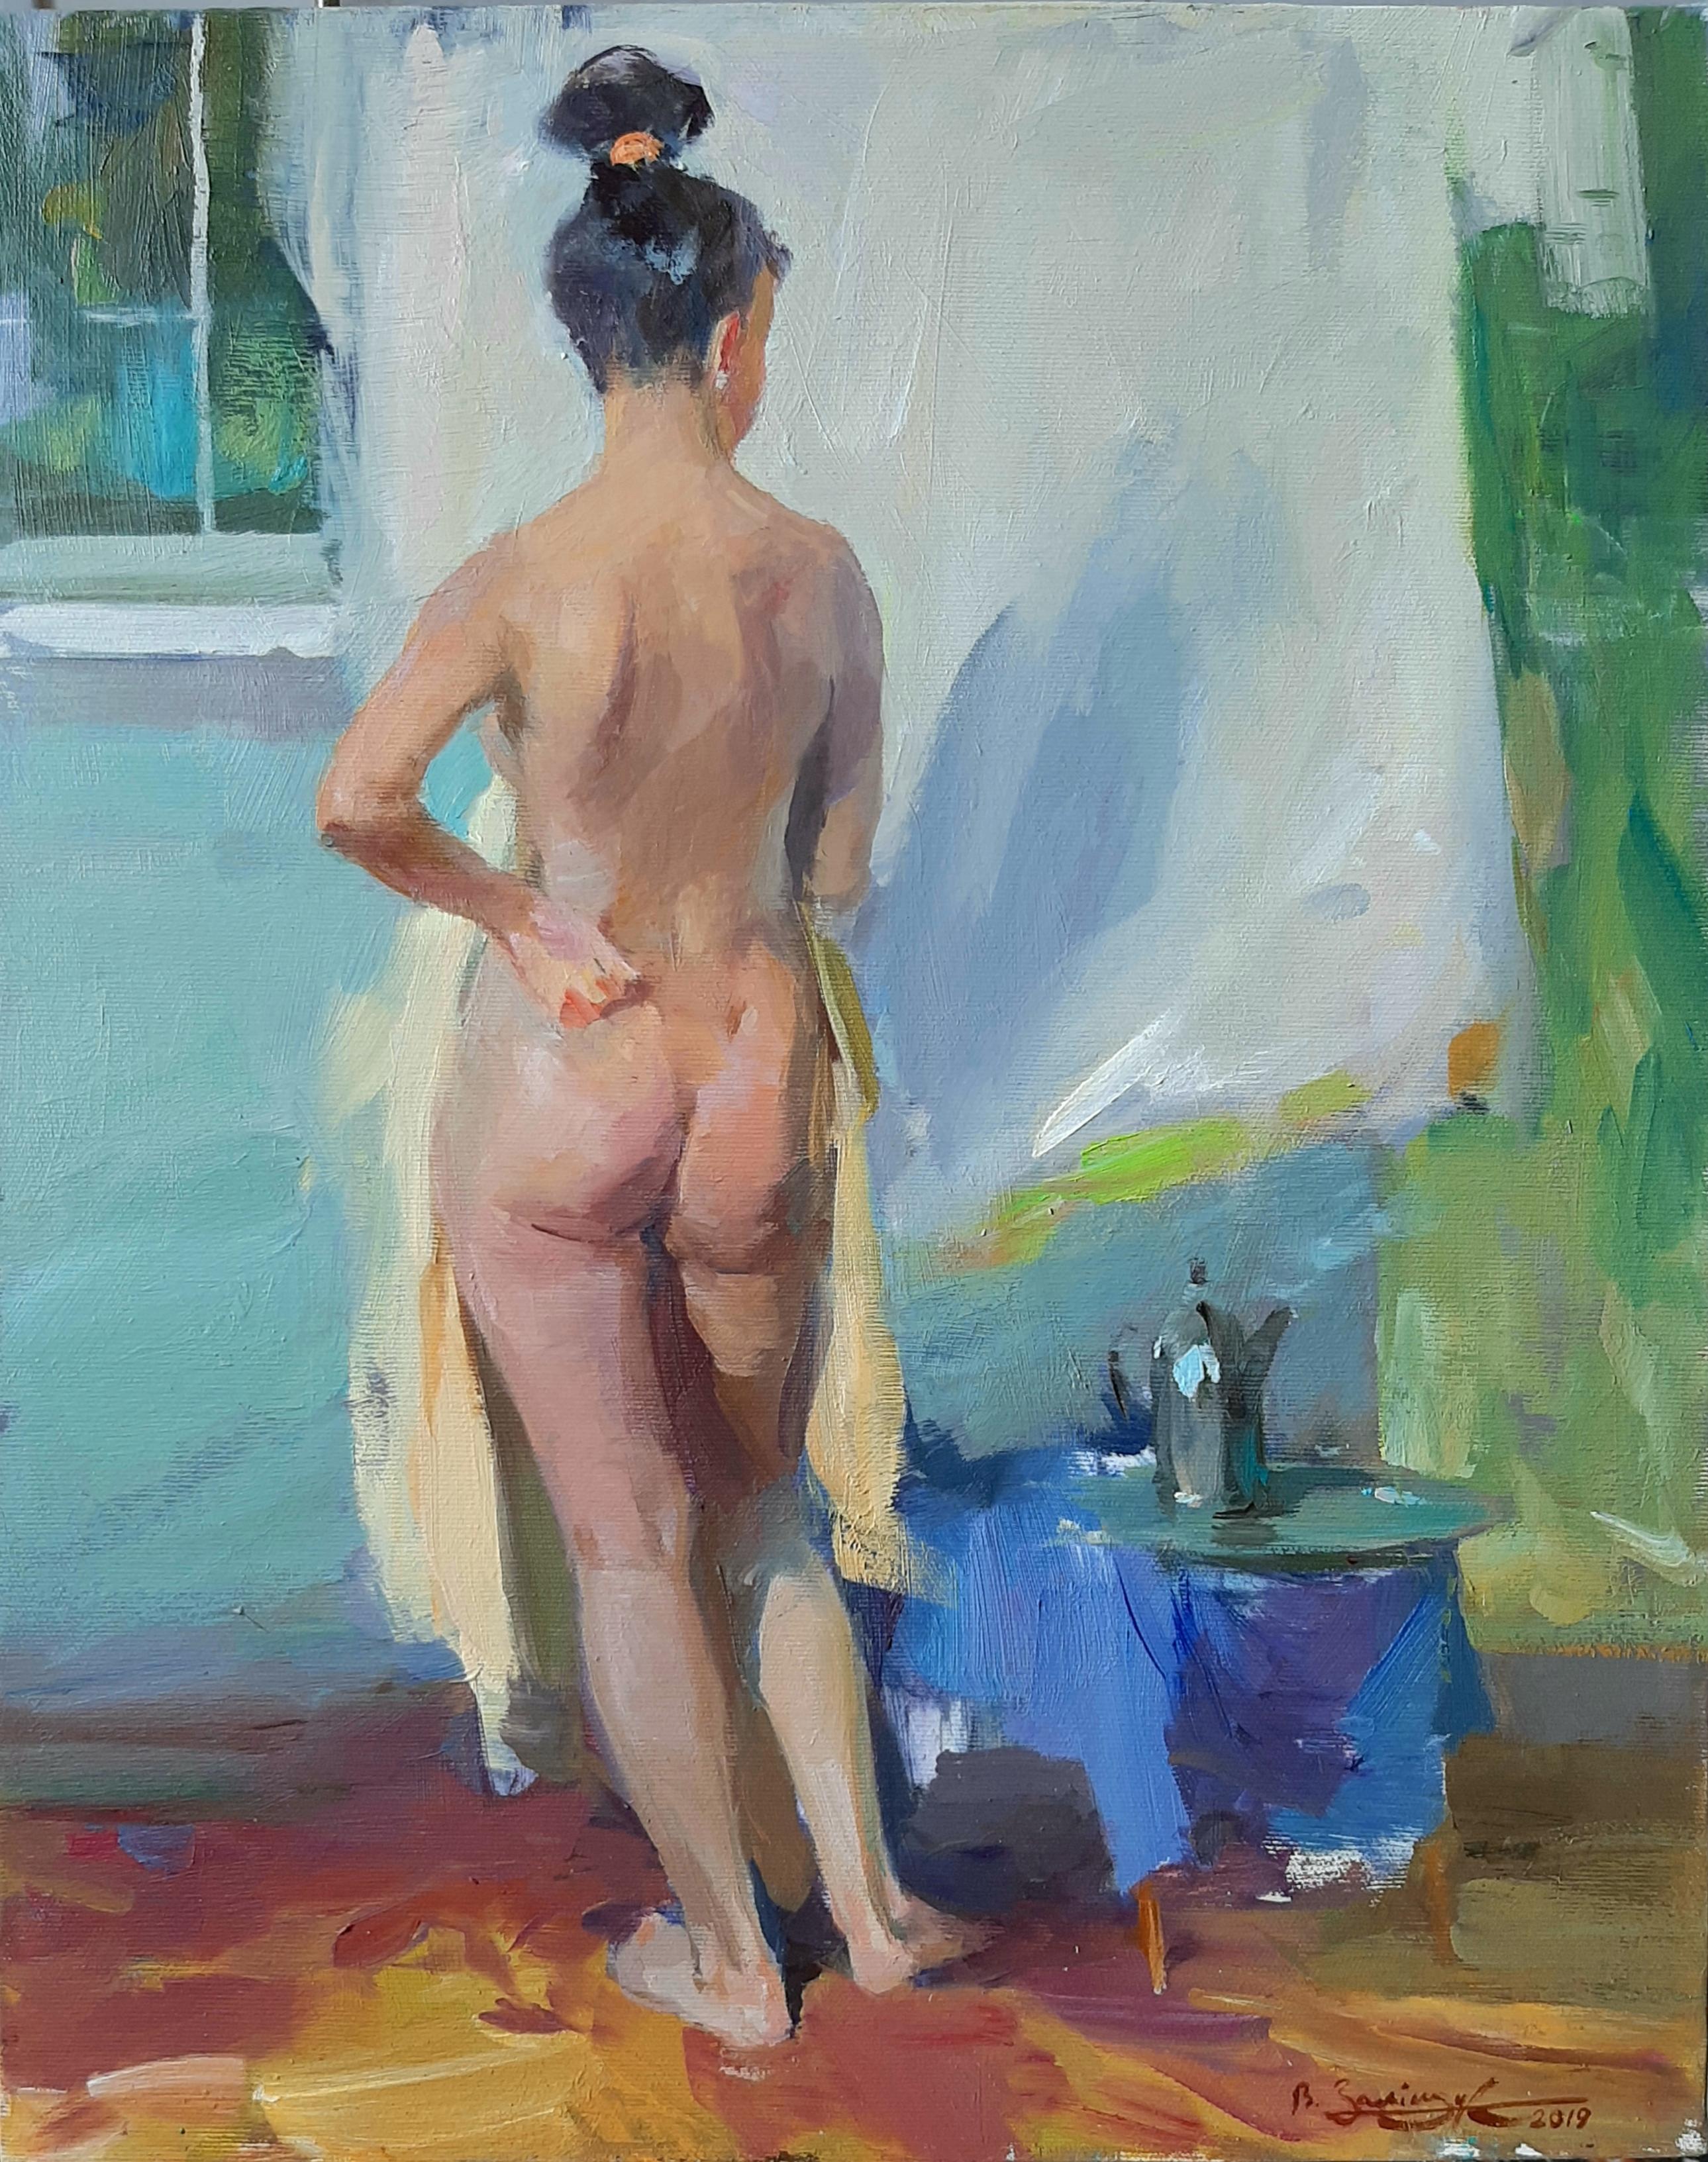 Nude Painting Valeriy Zalishchuk - Peinture à l'huile sur toile bleu, jaune, vert, blanc, beige et brun, jour d'été